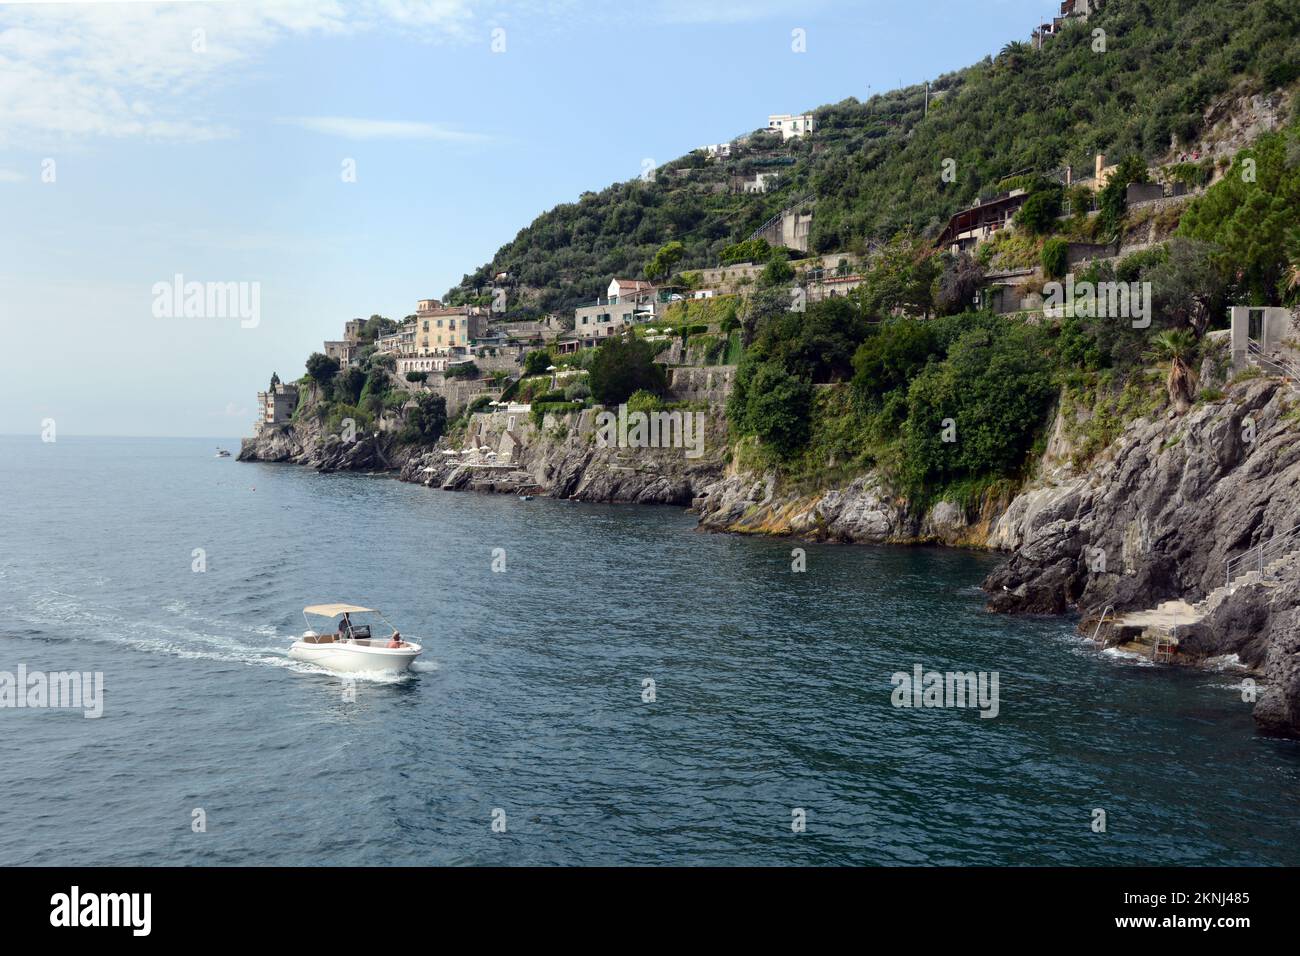 Navigate lungo il panoramico e roccioso tratto della Costiera Amalfitana nel borgo di Marmorata, frazione di Ravello, in Campania, nel Sud Italia. Foto Stock